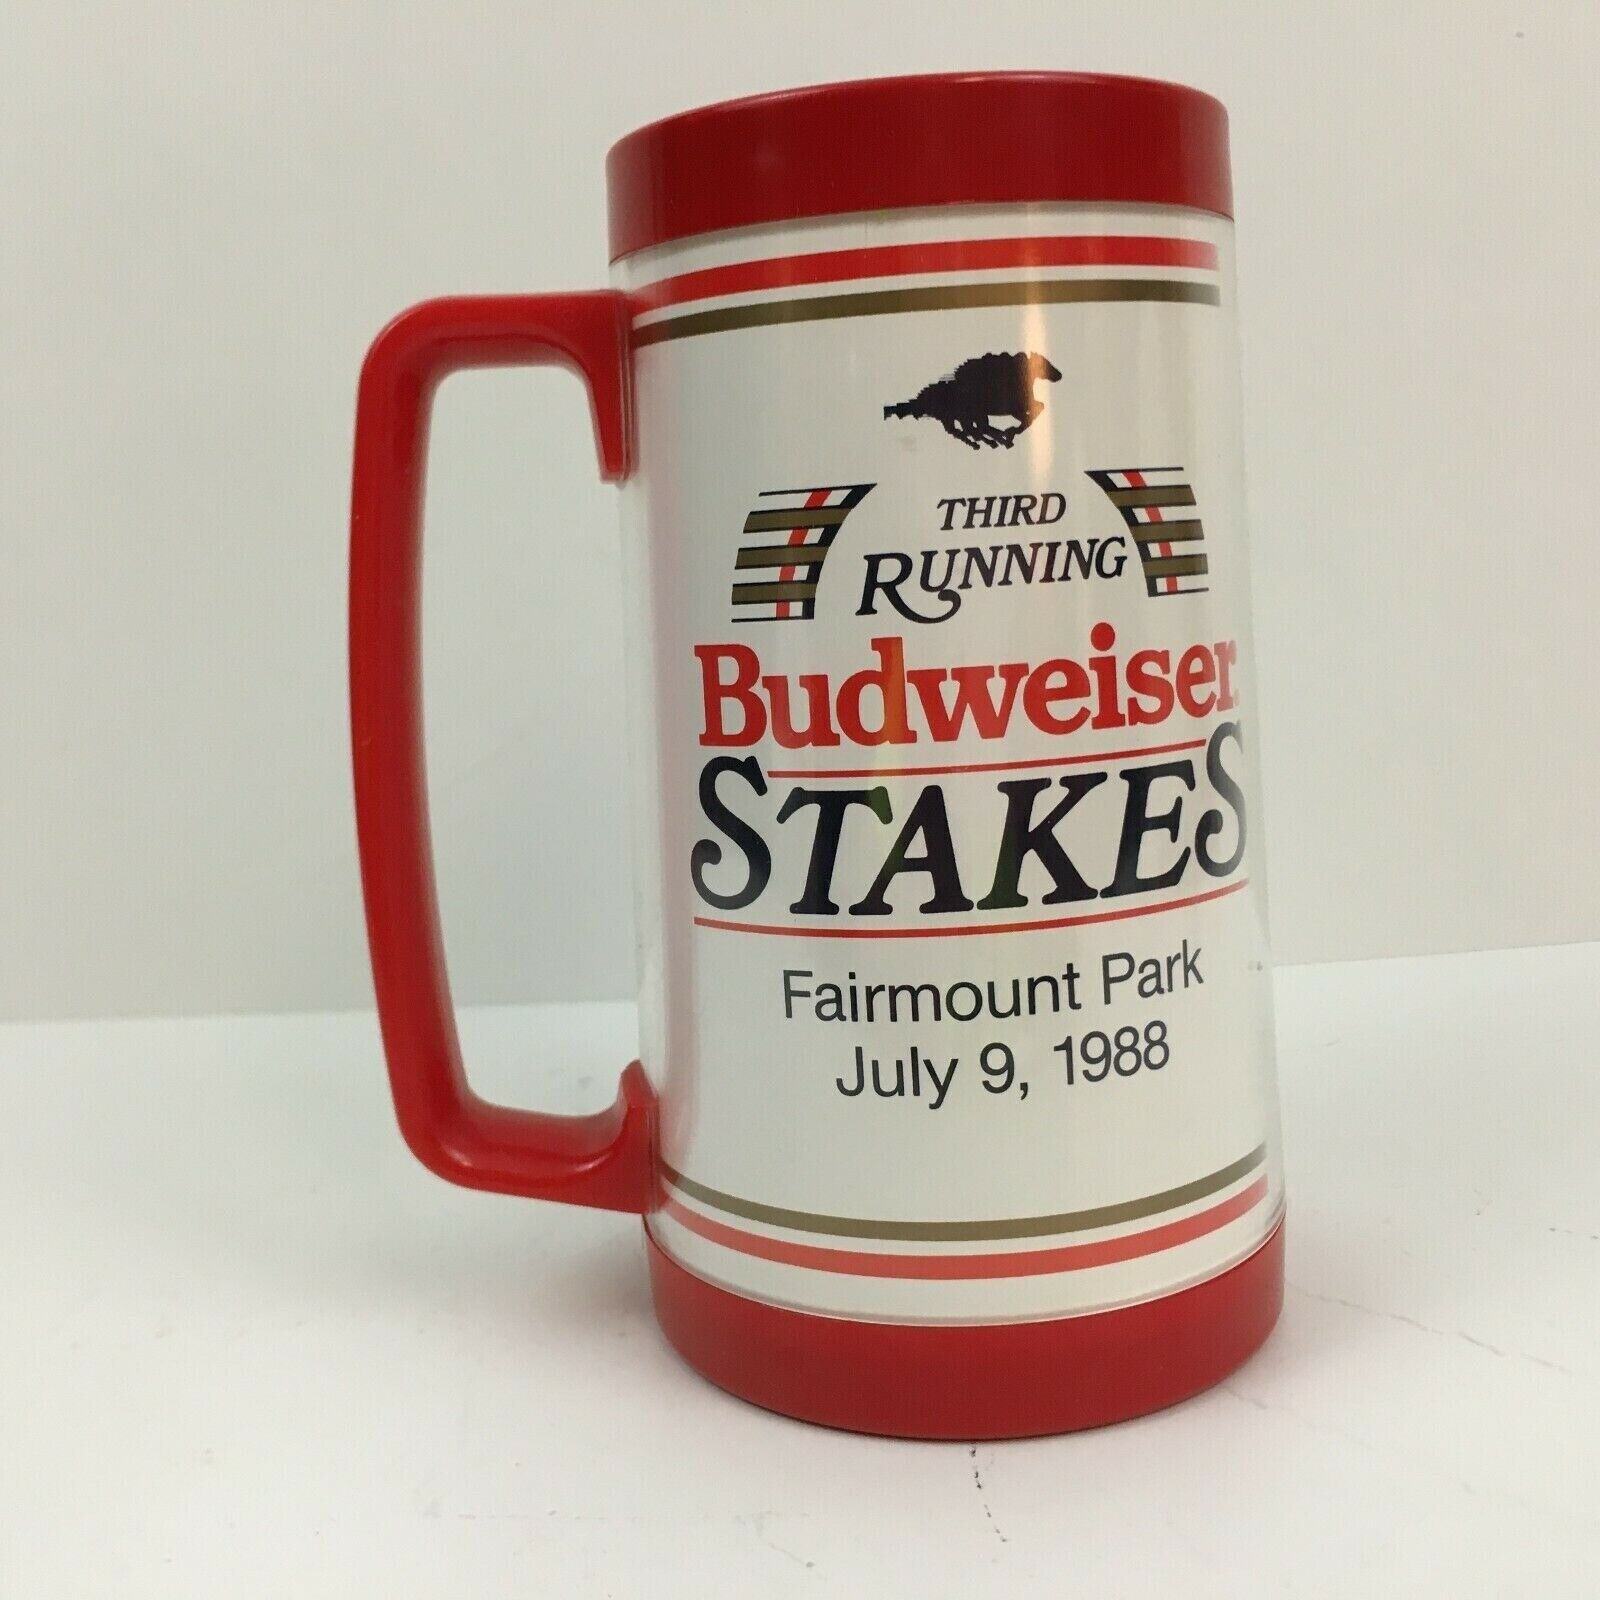 Budweiser Stakes 43rd Running Insulated Mug Fairmount Park July 9, 1988